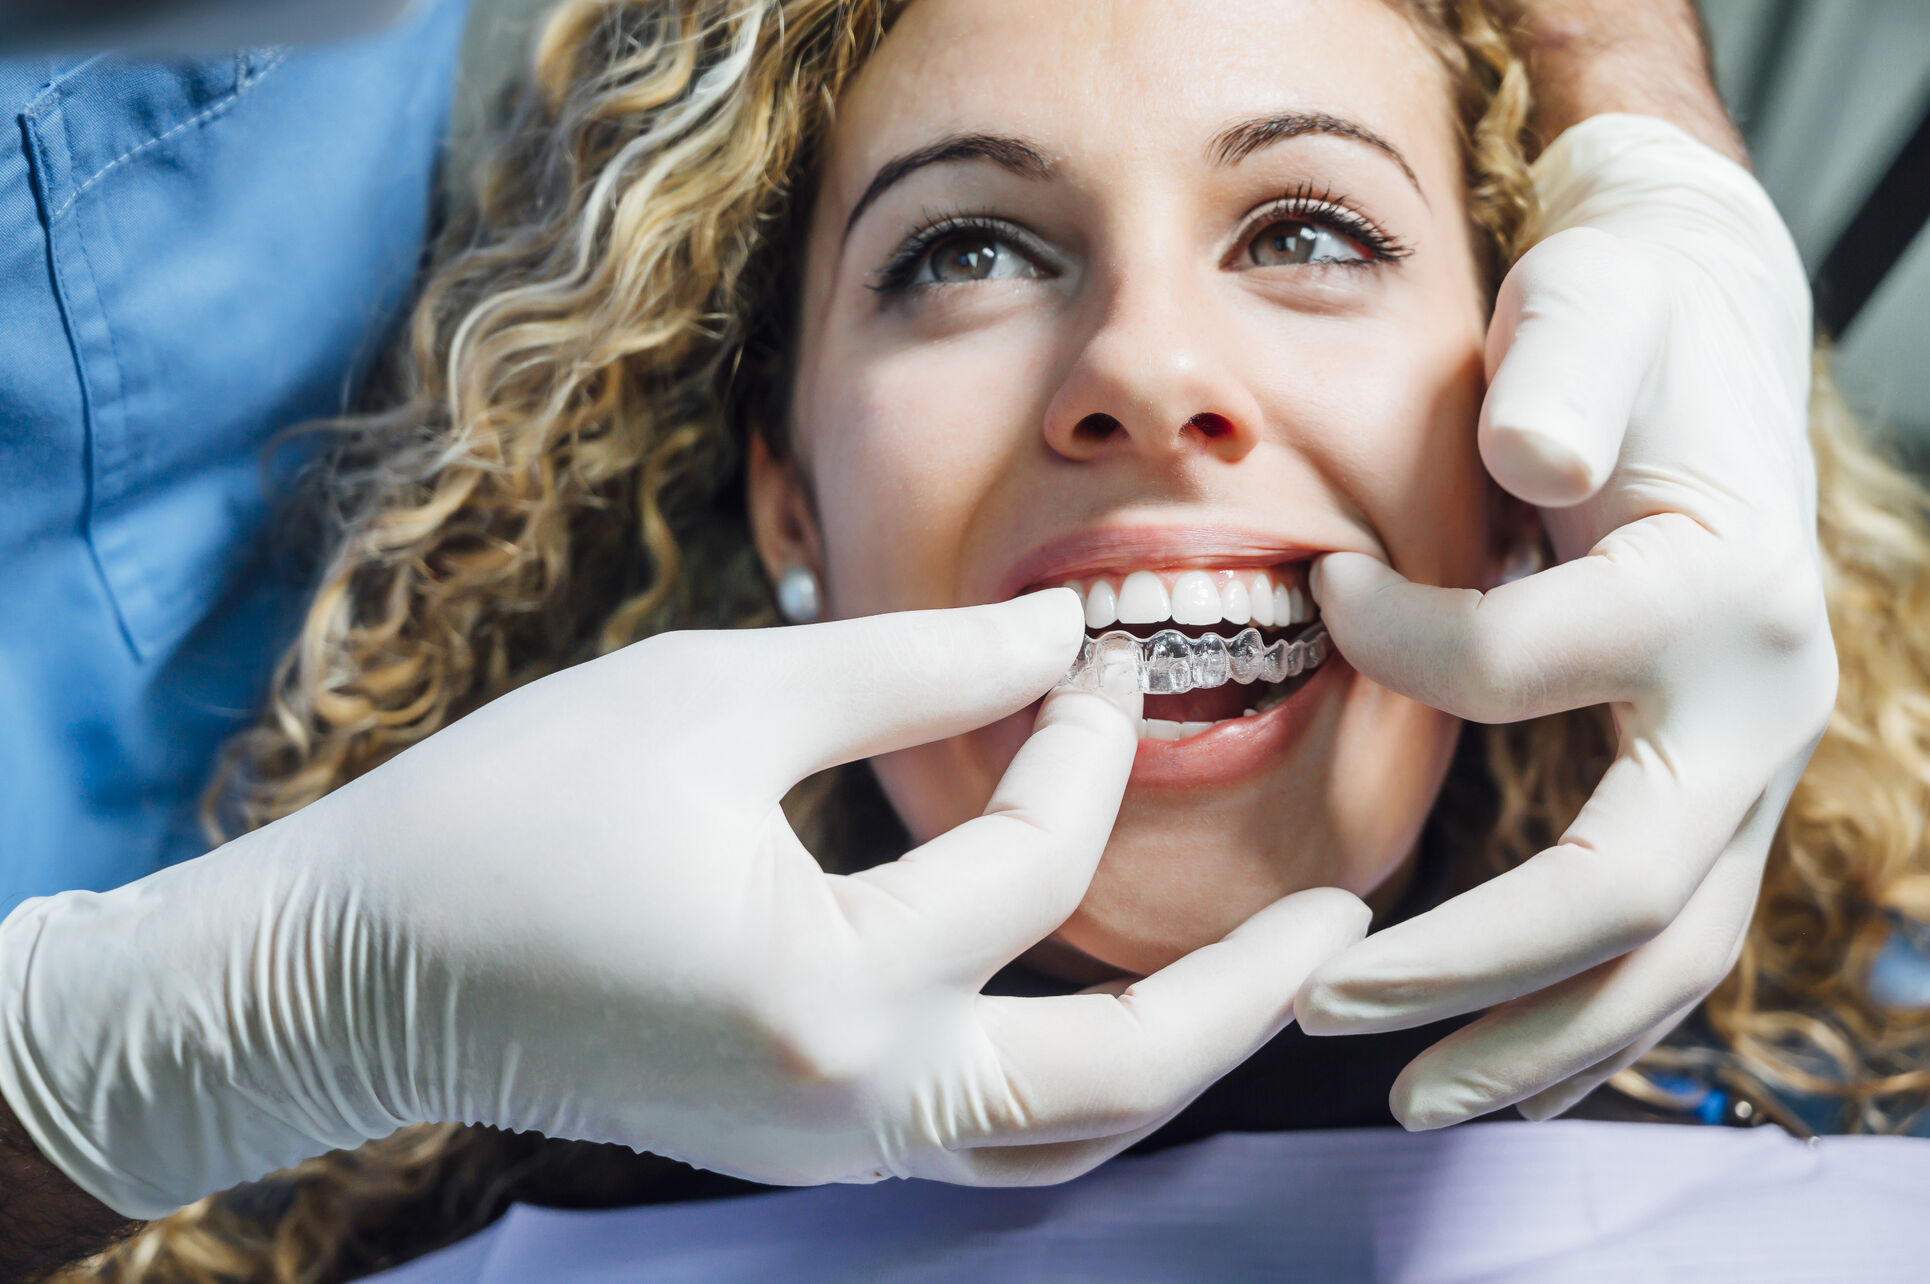 Les gouttières transparentes Invisalign : la solution orthodontique invisible pour un sourire parfait